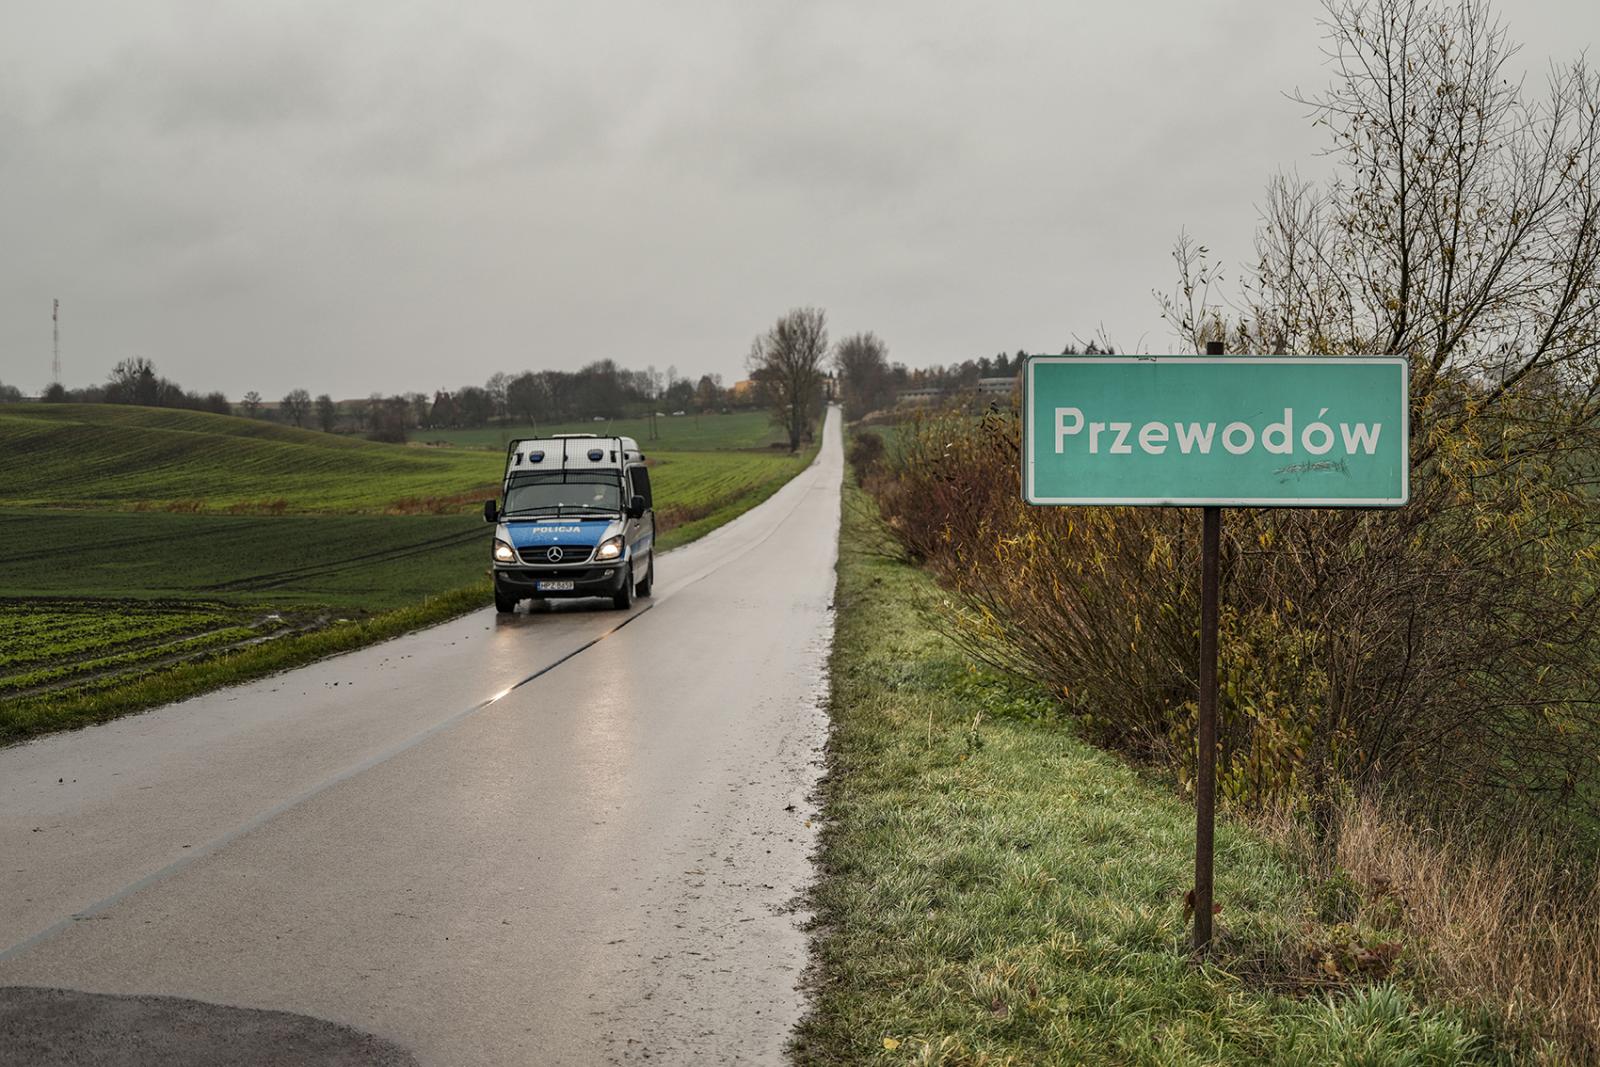 16/11/2022 Przewodow-Poland. On...onderko for the Washington Post